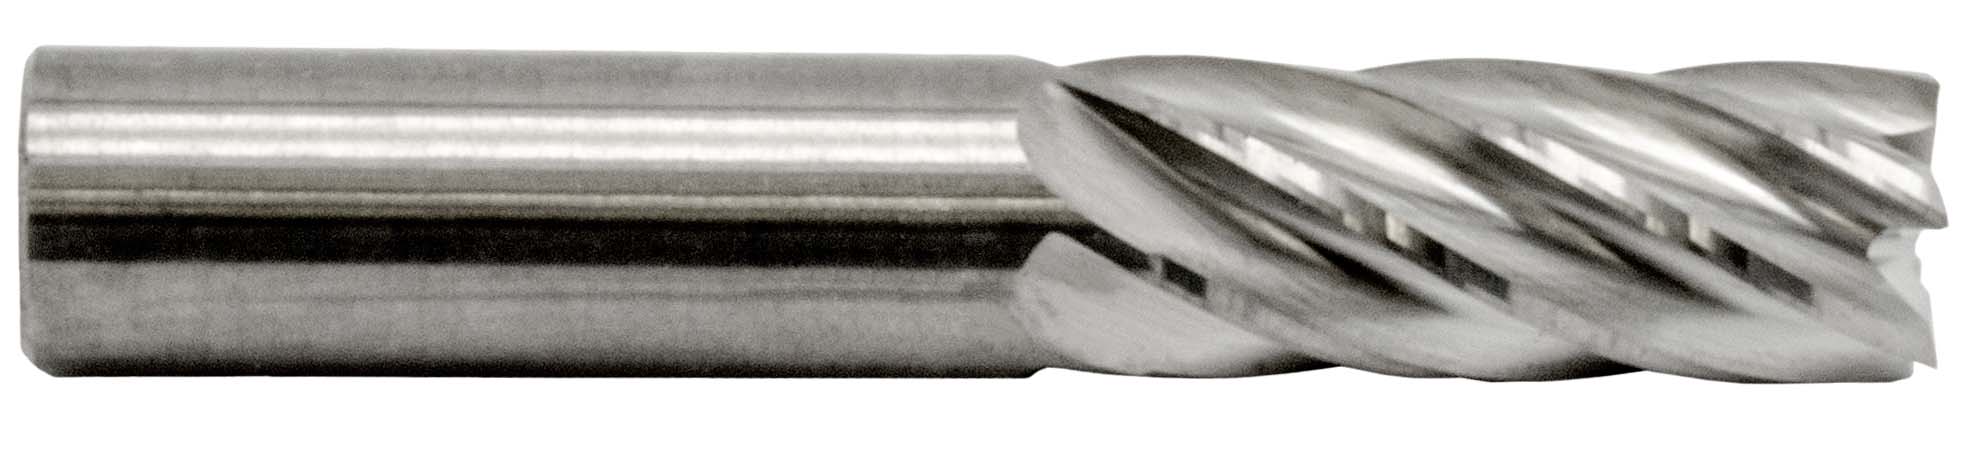 6-Flute Solid Carbide End Mills